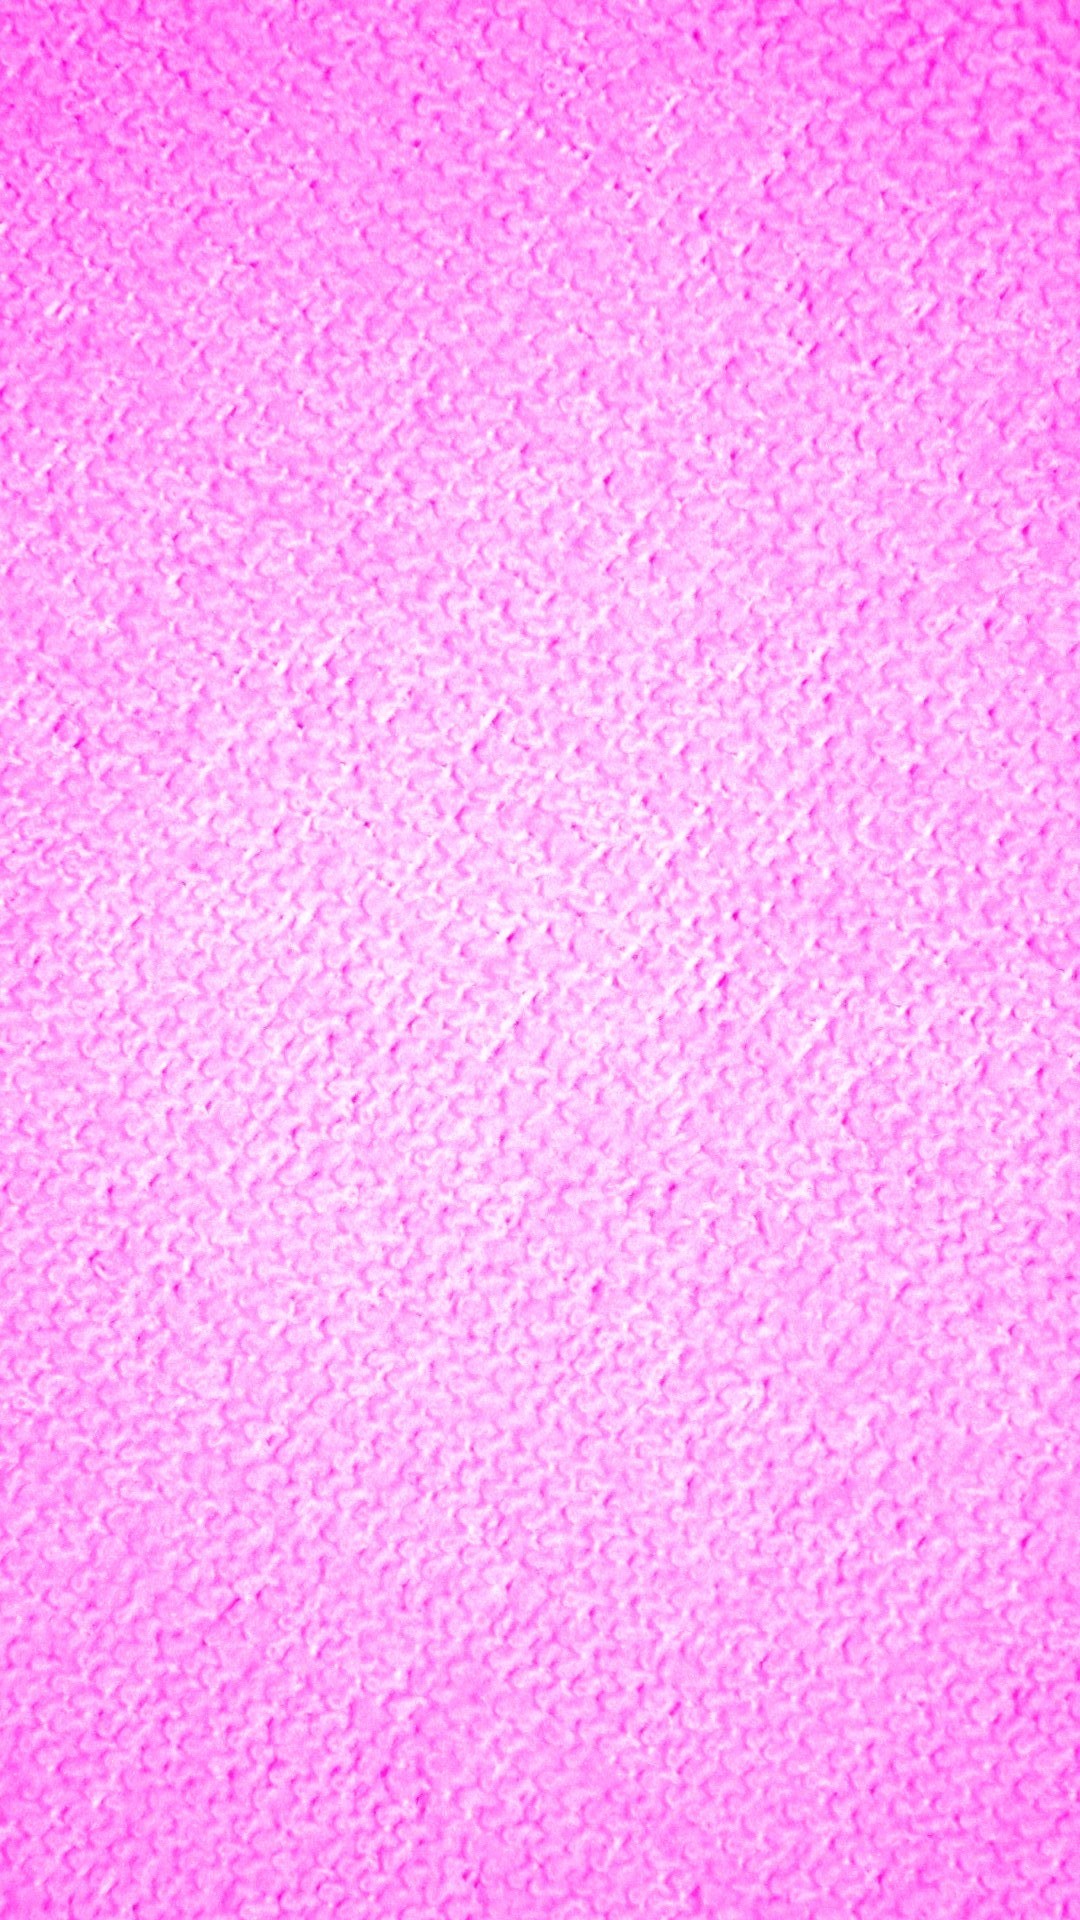 Pink Micro Fiber Cloth iPhone Wallpaper